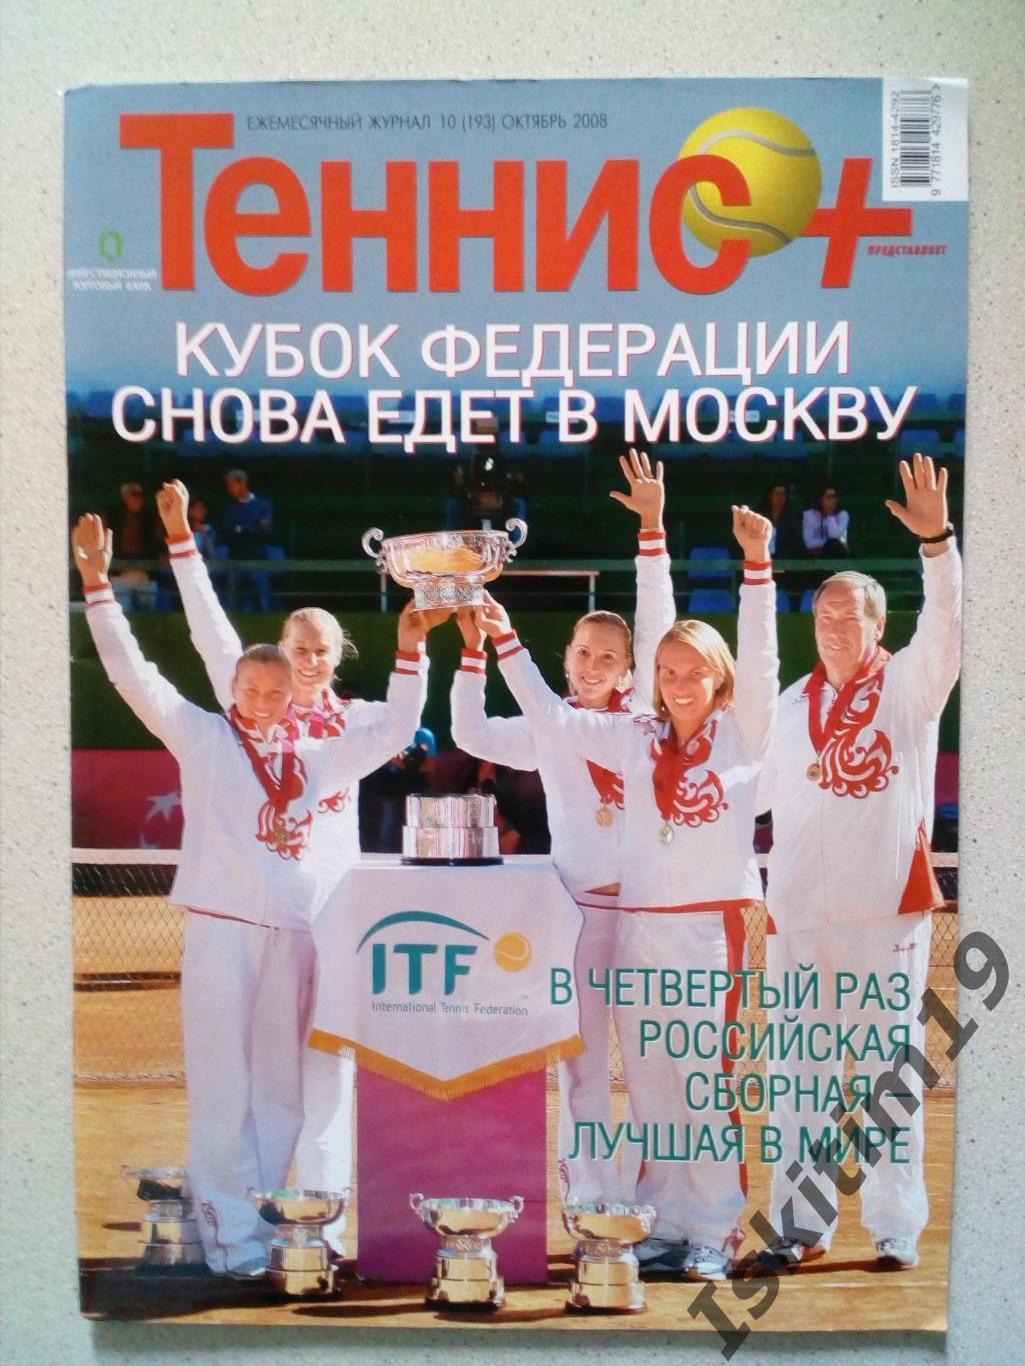 Журнал Теннис+ октябрь 2008 № 10 (193) + каталог Babolat